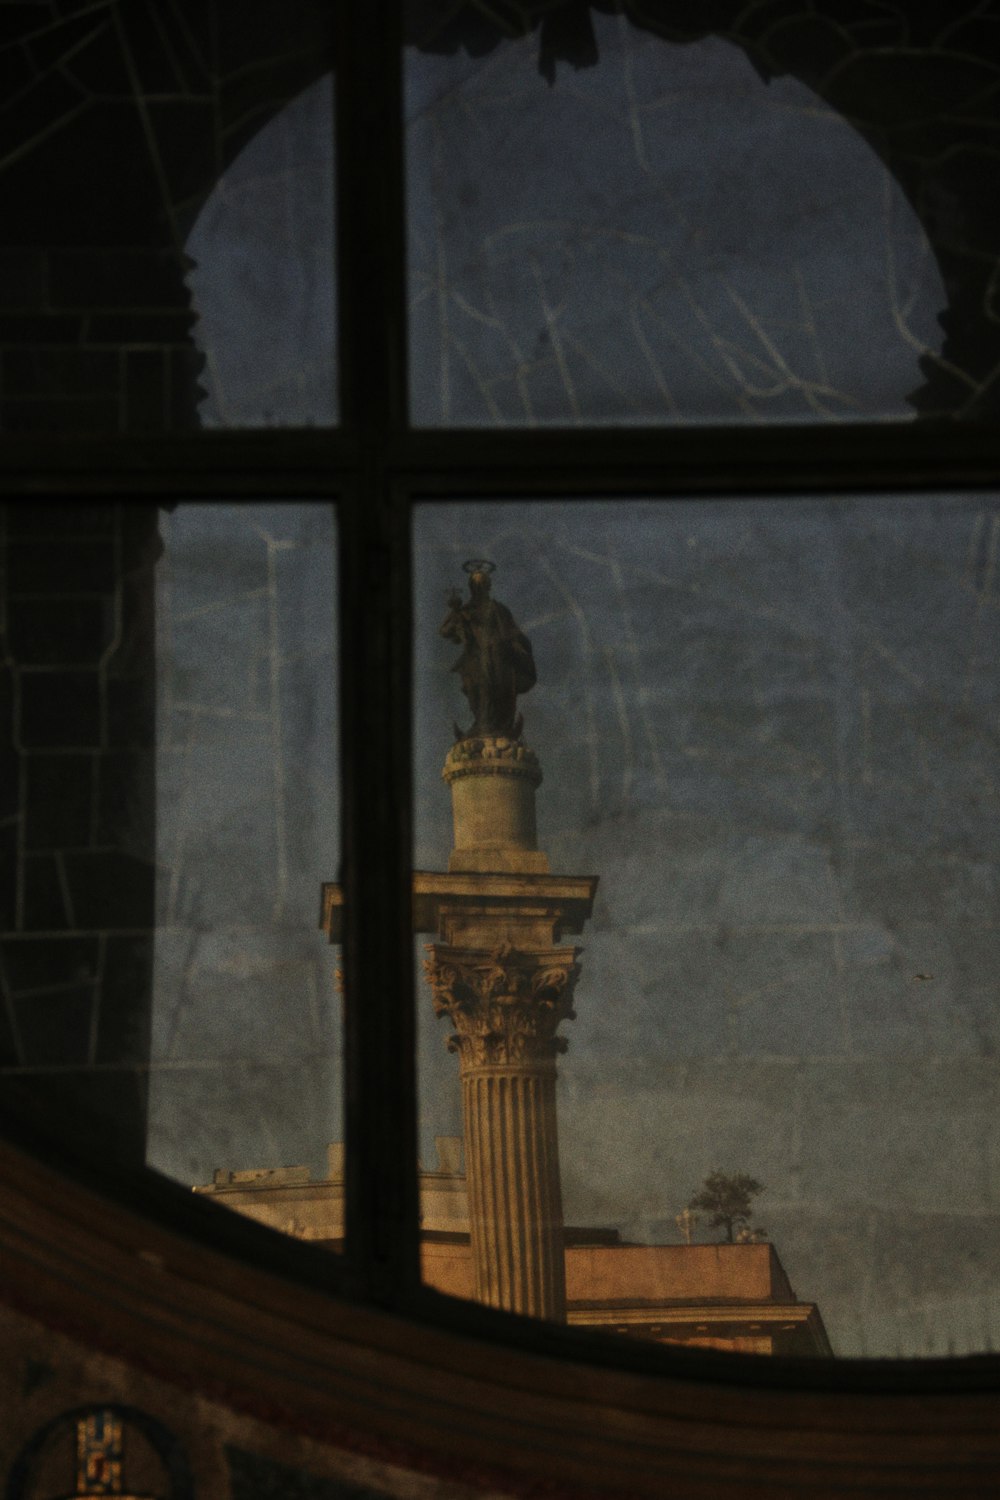 Una vista de una estatua a través de una ventana